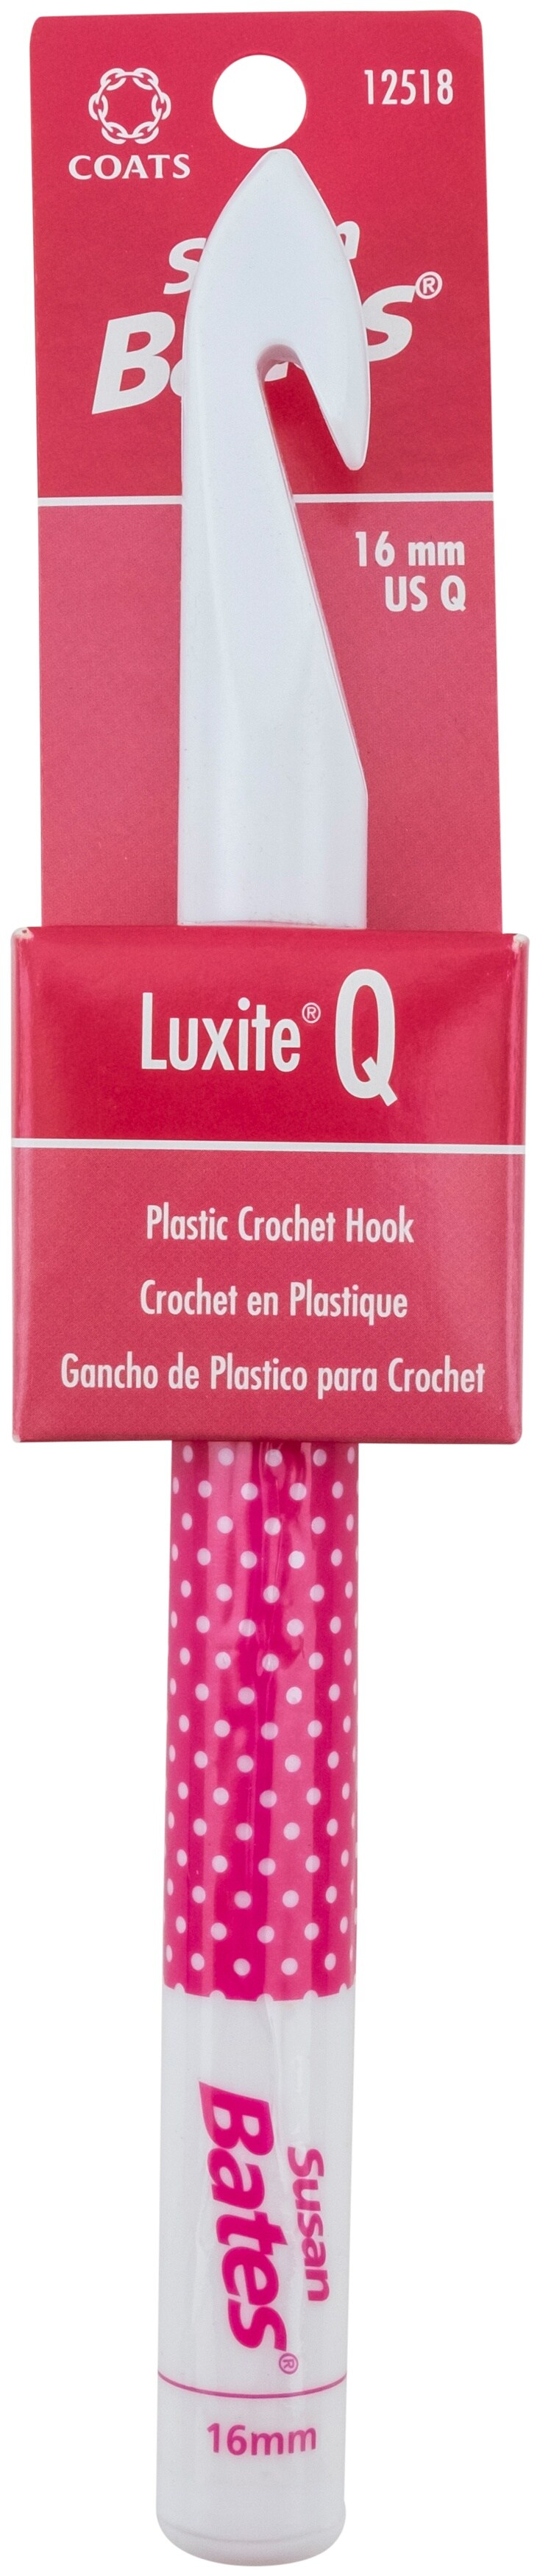 Susan Bates Luxite Plastic Crochet Hook-Size Q/16Mm